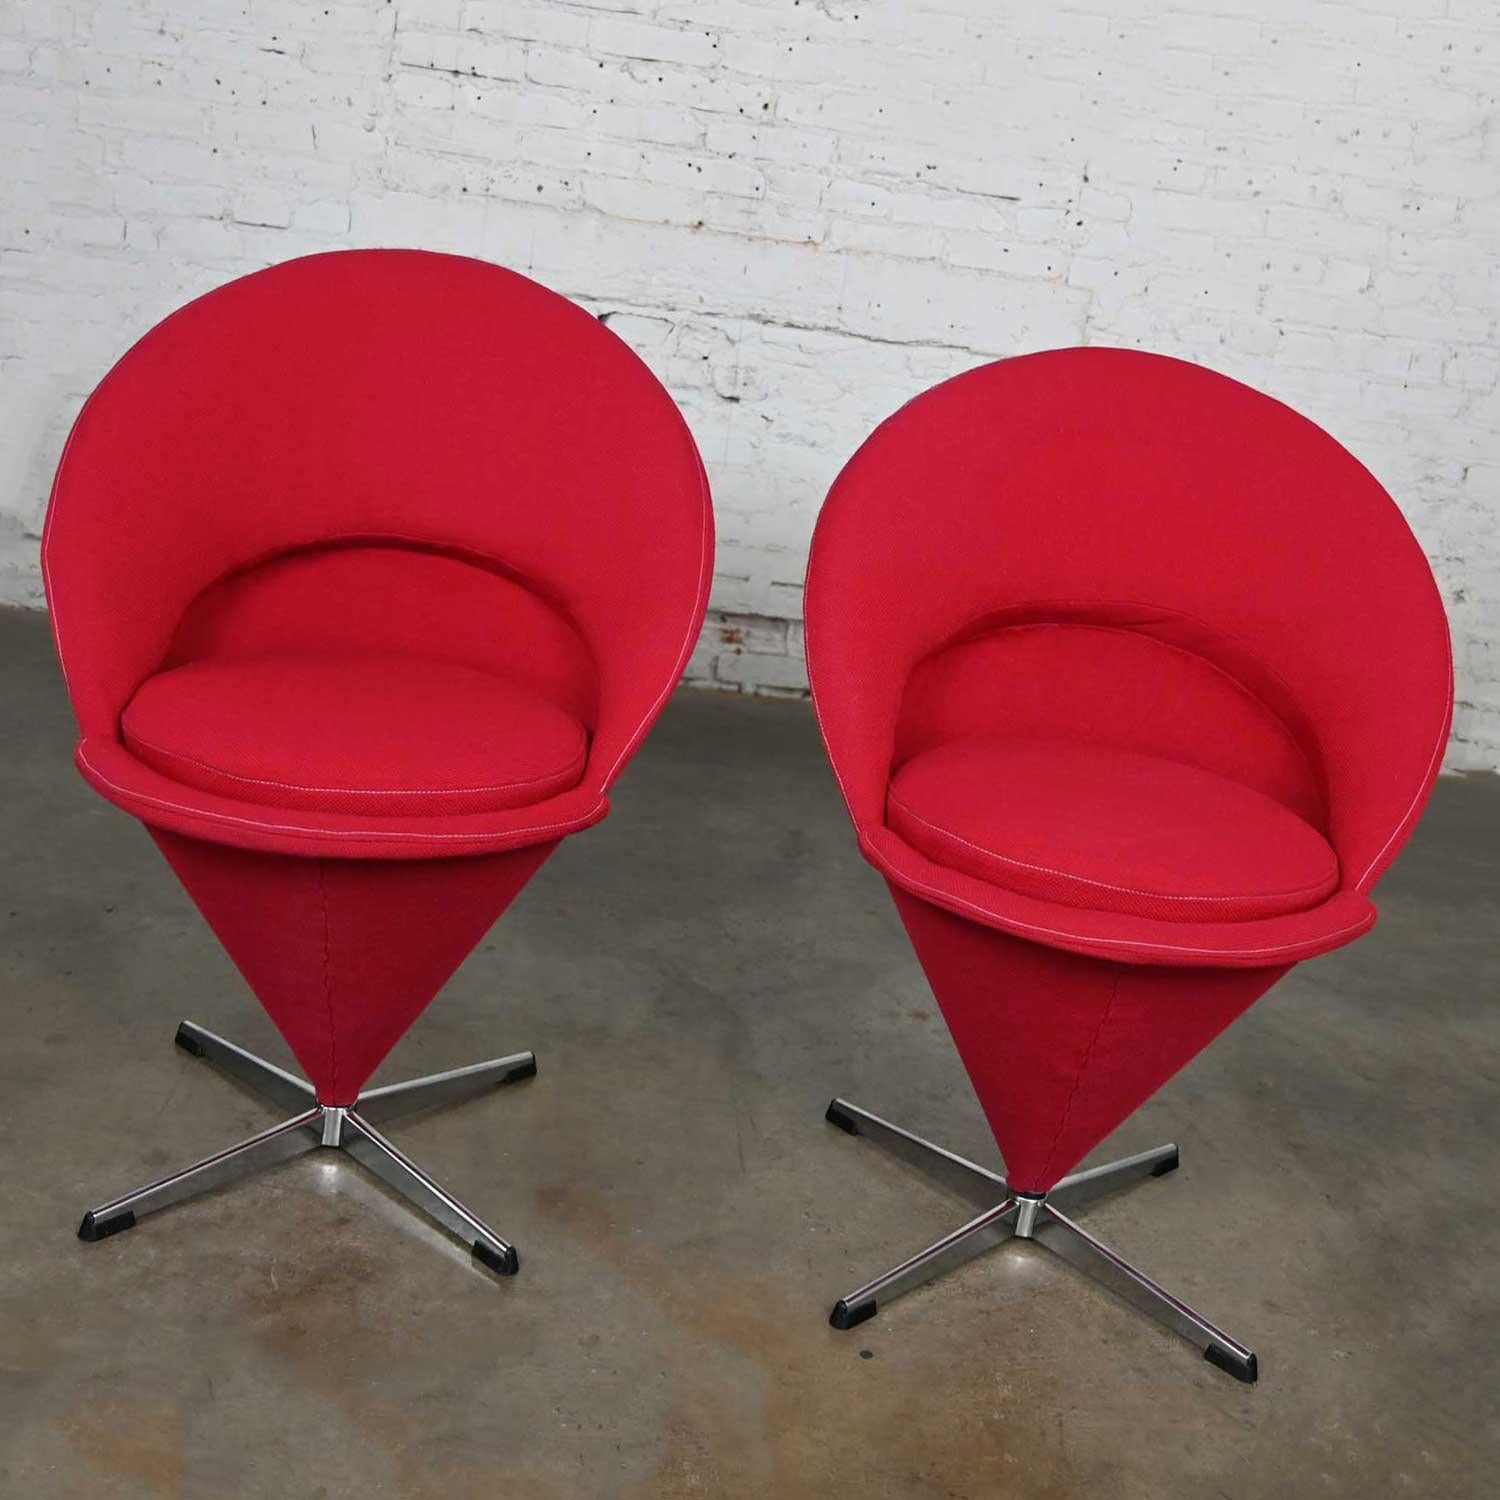 Magnifique paire de chaises rouges Cone de Verner Panton pour Fritz Hansen, datant du milieu du siècle dernier. Elles sont composées d'une structure en tôle pliée recouverte de toile de jute rouge, de coussins d'assise ronds et de bases chromées